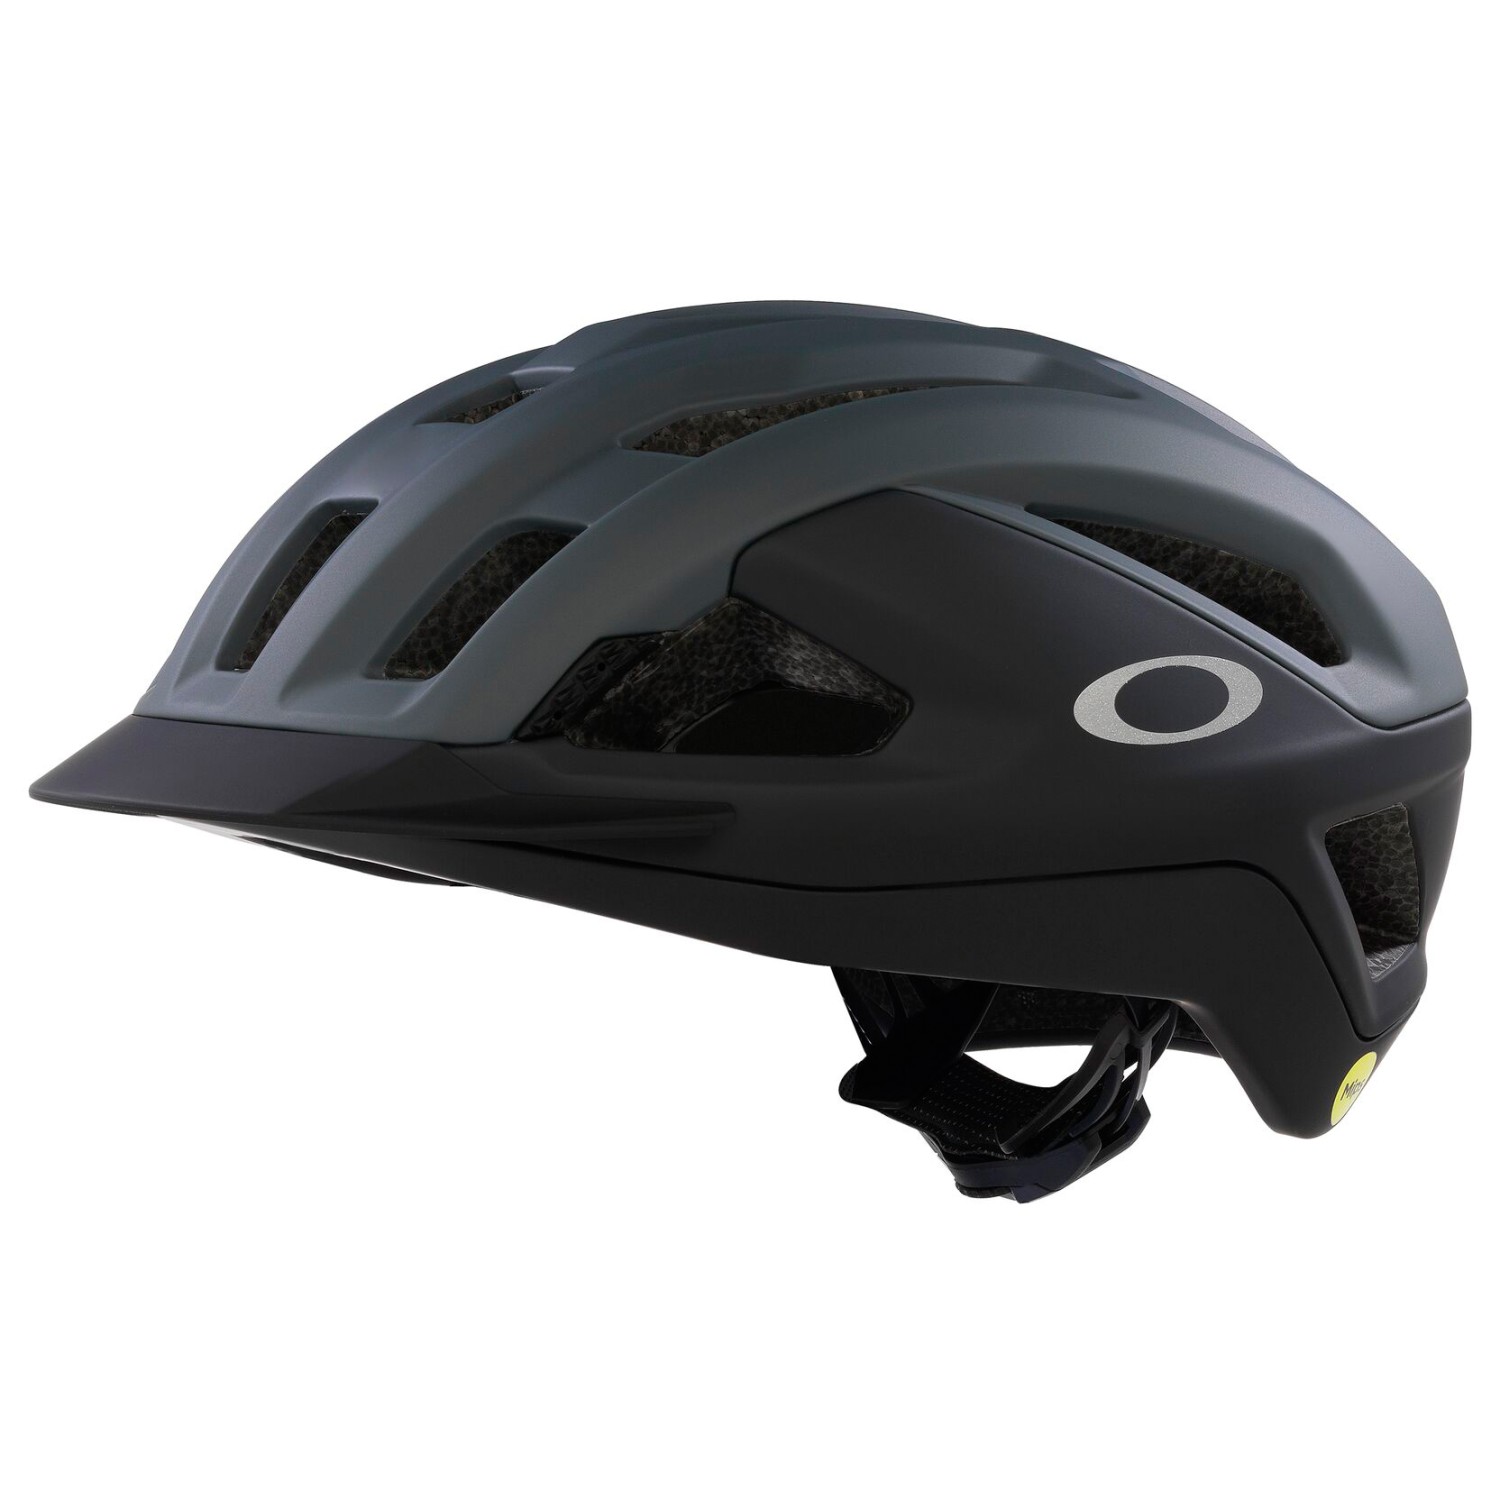 Велосипедный шлем Oakley ARO3 Allroad, цвет Matte Dark Grey/Med Grey